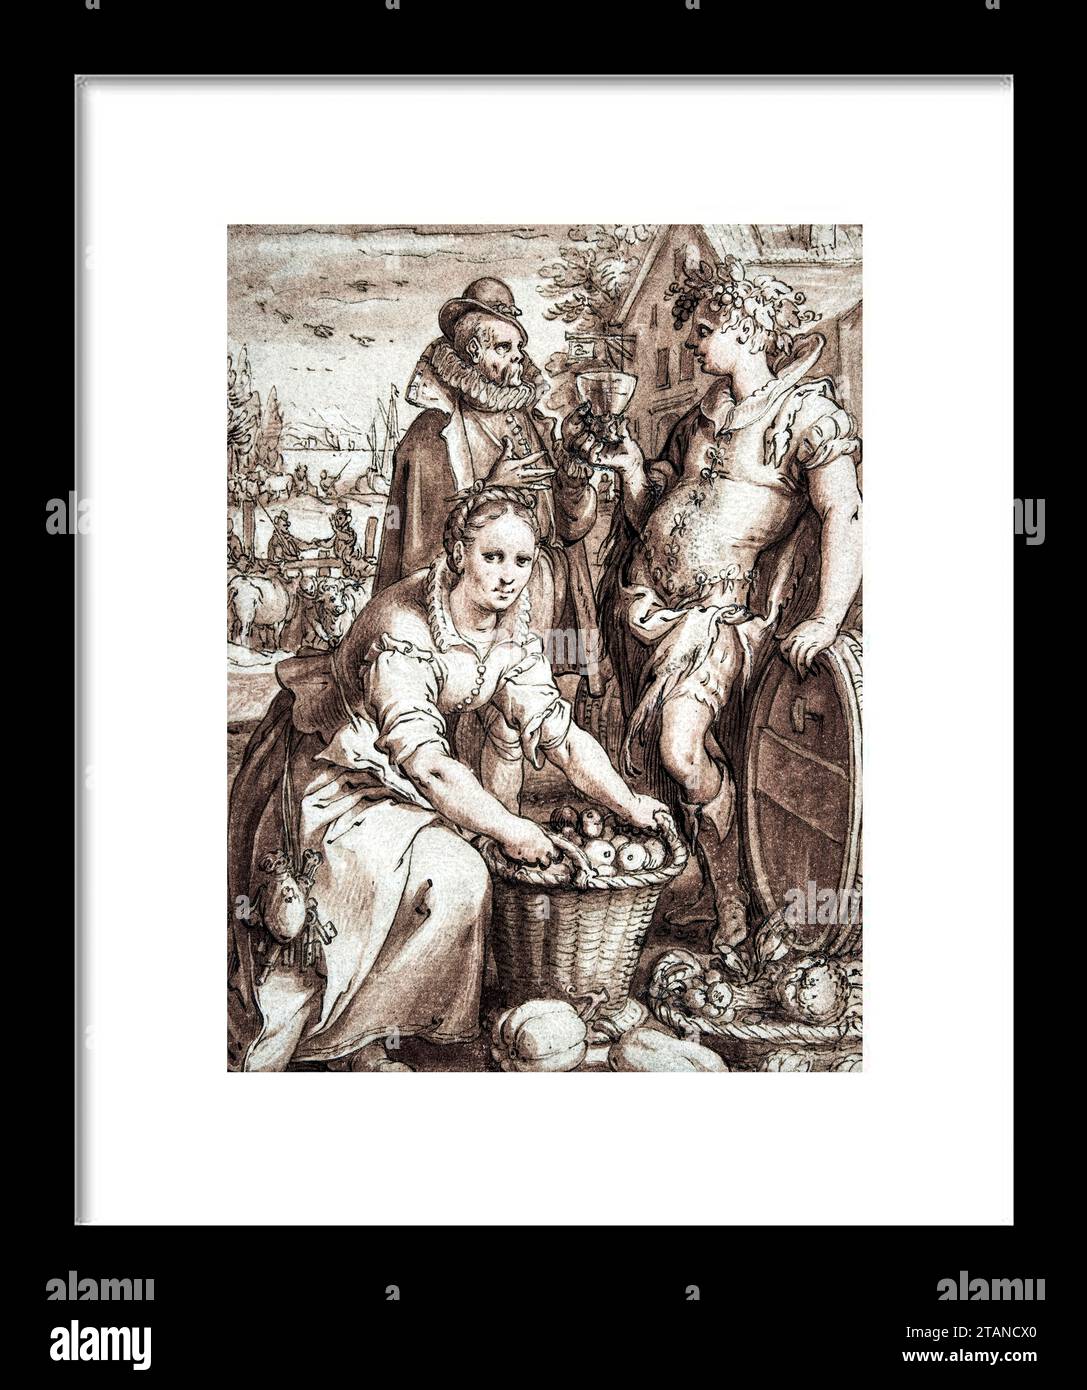 Herbst; Studie für eine Gravur. Hendrick Goltzius (Niederländisch, Mьhlbracht 1558-1617 Haarlem) Pen und braune Tinte, rotbraune Waschung, über schwarzer Kreide, h Stockfoto